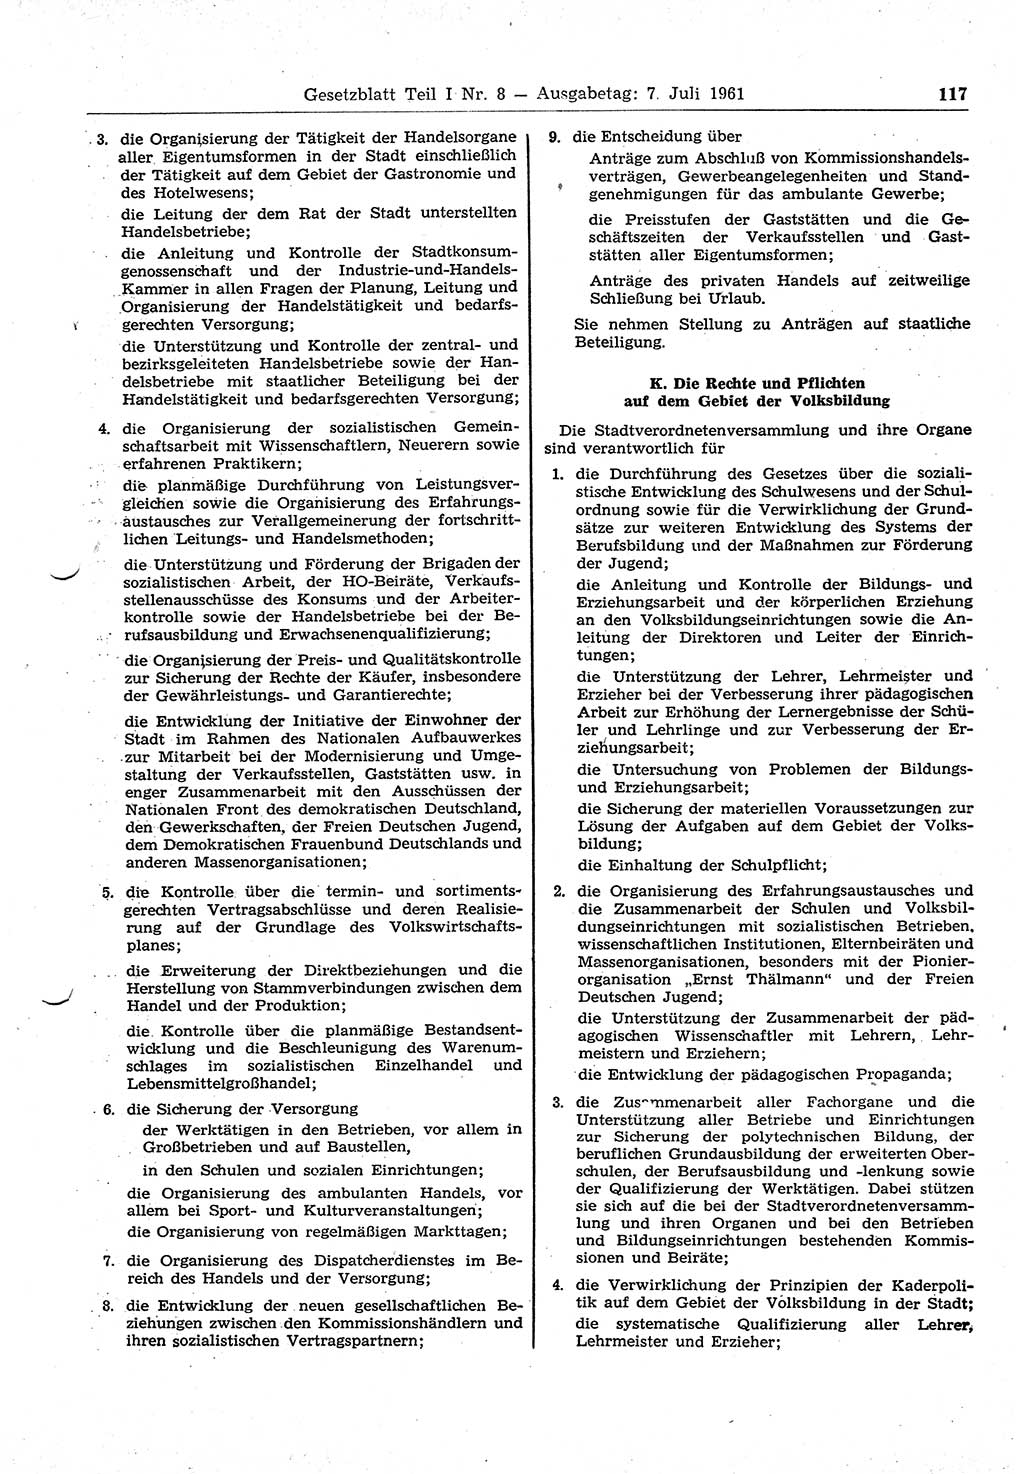 Gesetzblatt (GBl.) der Deutschen Demokratischen Republik (DDR) Teil Ⅰ 1961, Seite 117 (GBl. DDR Ⅰ 1961, S. 117)